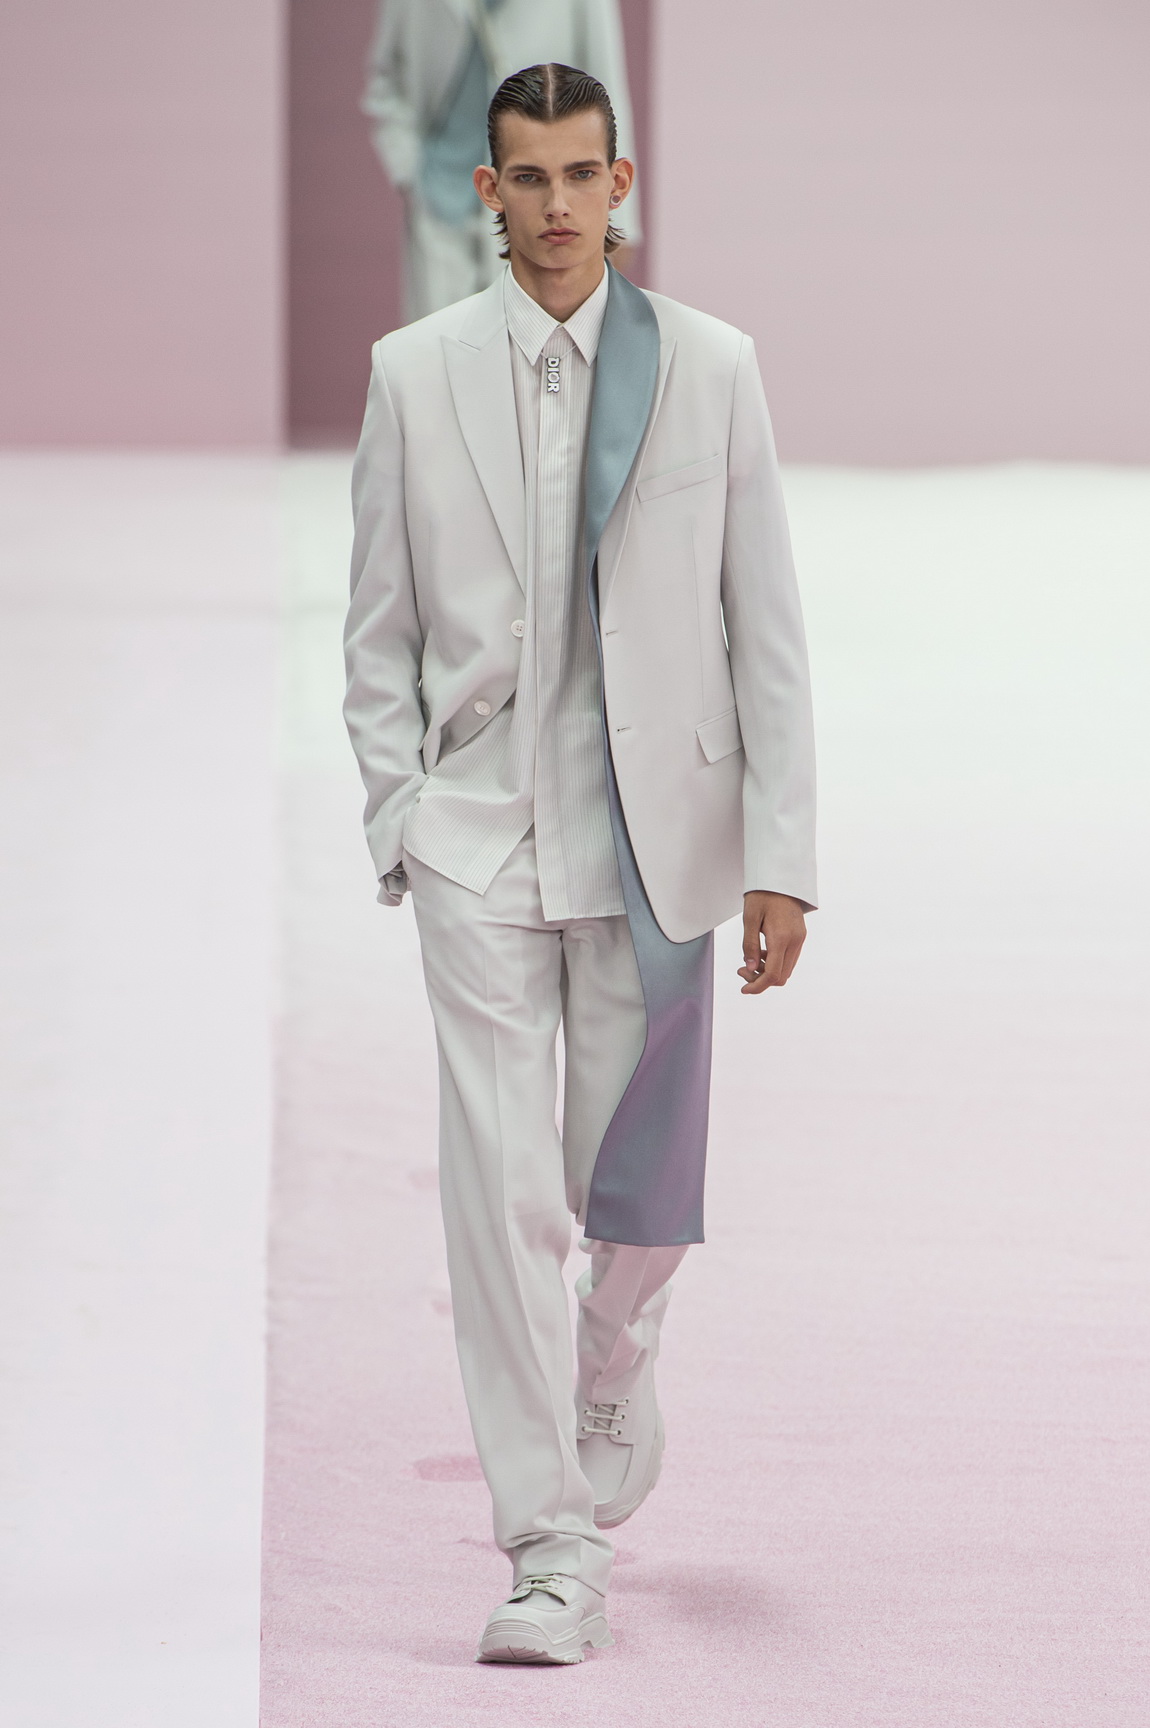 Christian Dior Suits Outlet Websites, Save 66% | jlcatj.gob.mx